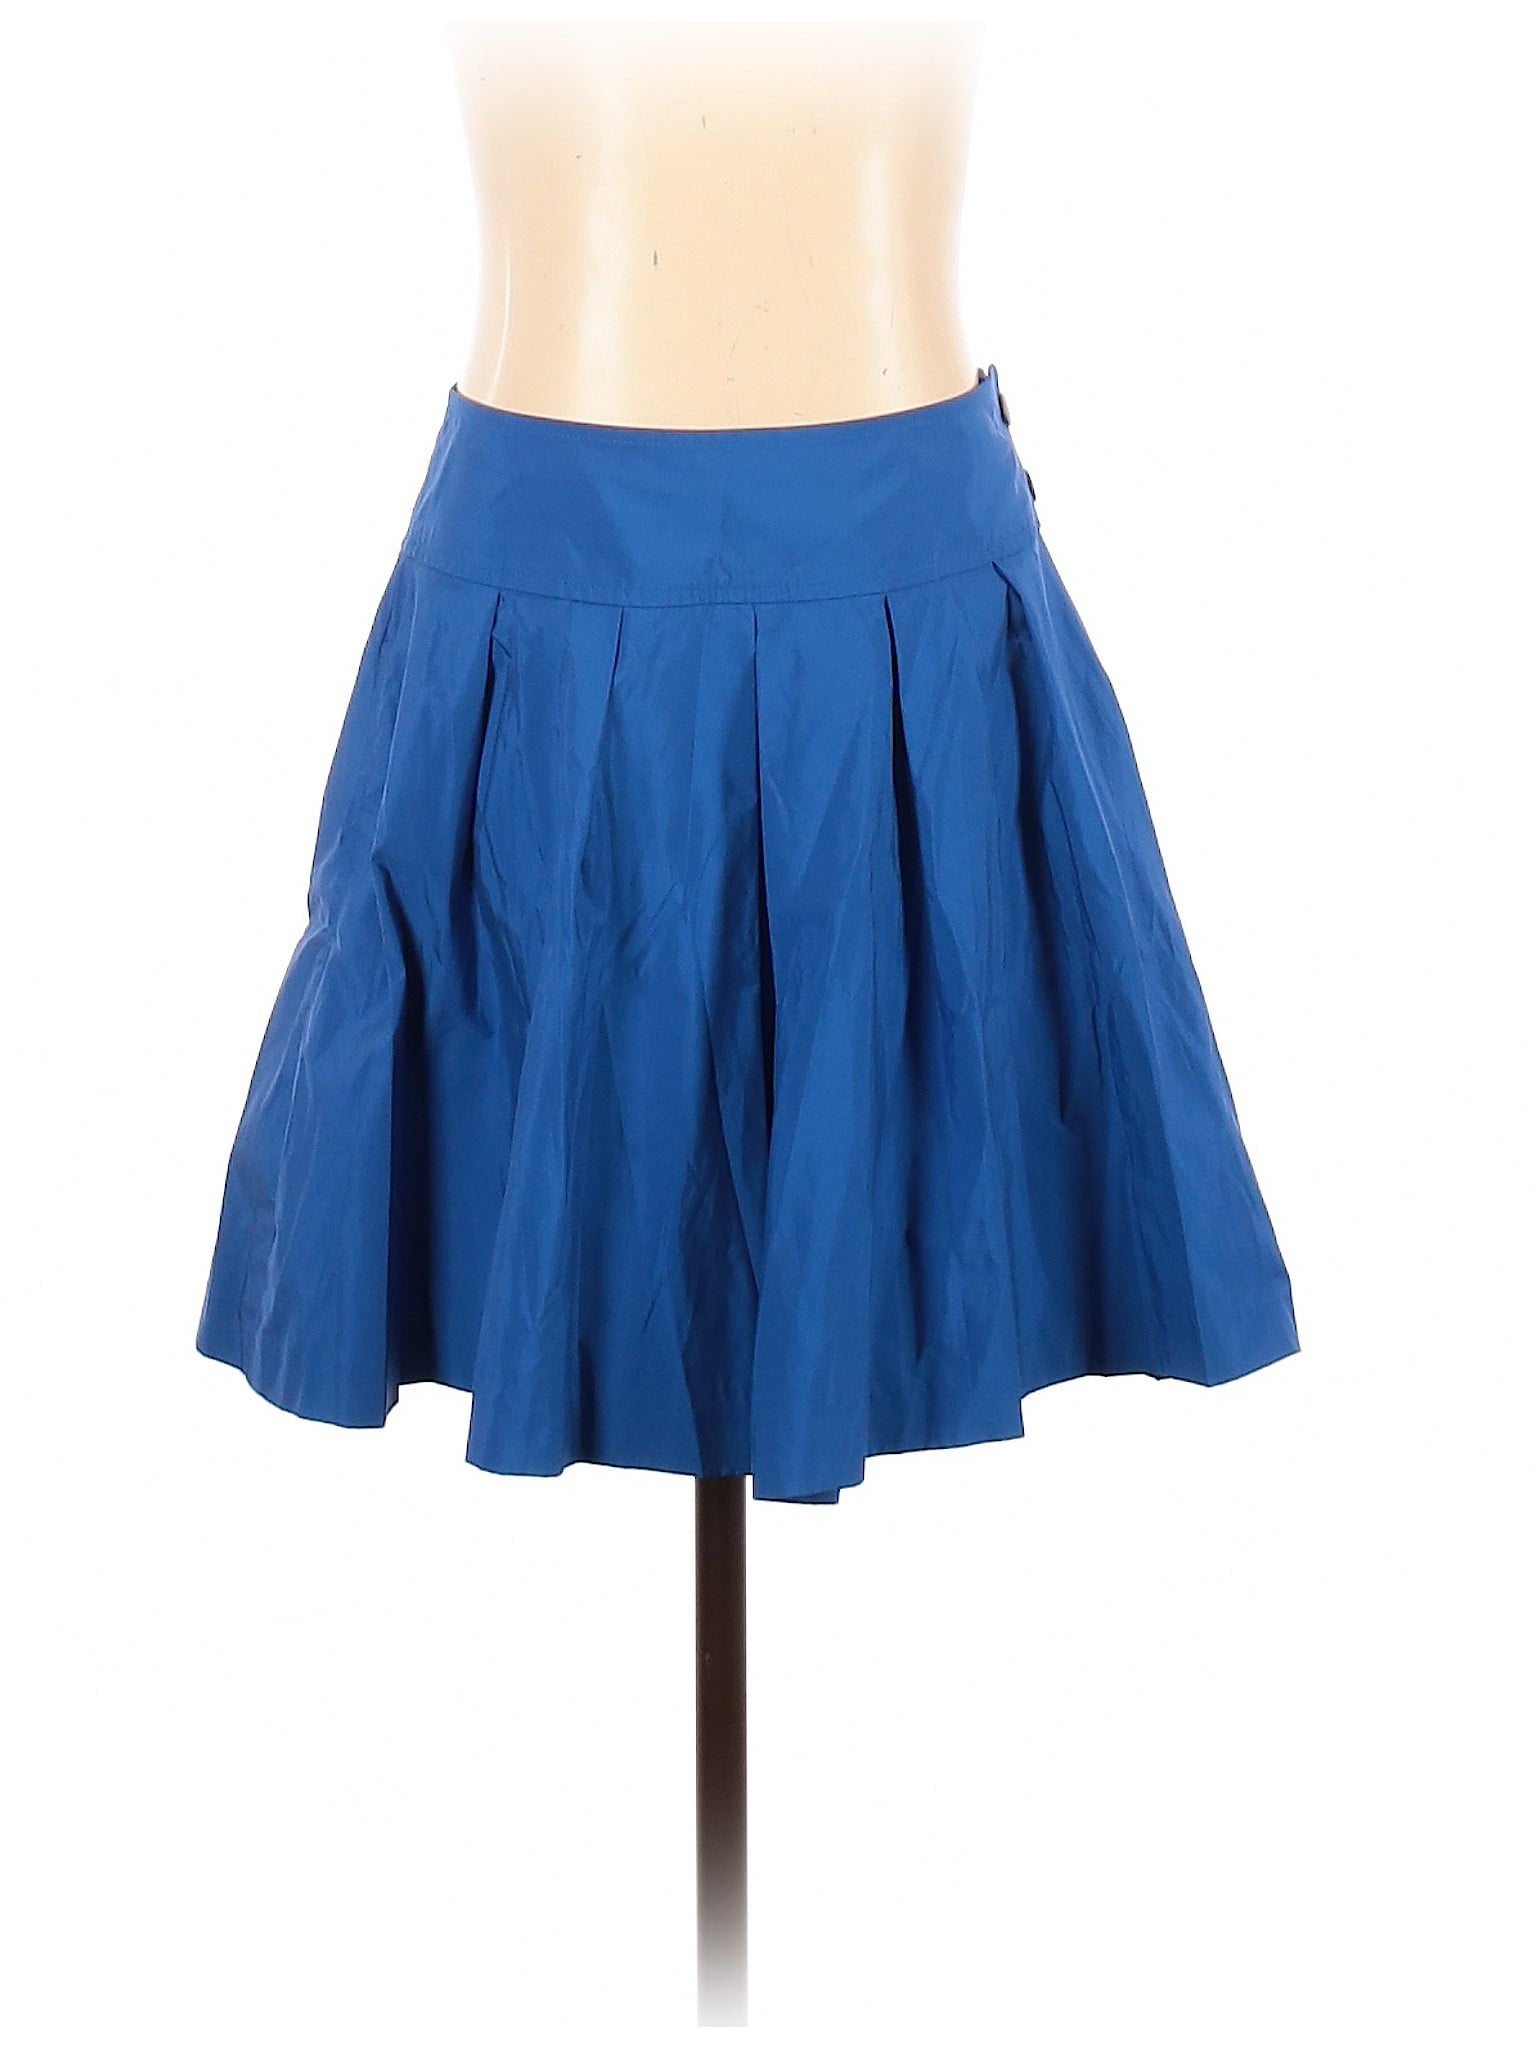 UNIQLO - Pre-Owned Uniqlo Women's Size 4 Casual Skirt - Walmart.com ...